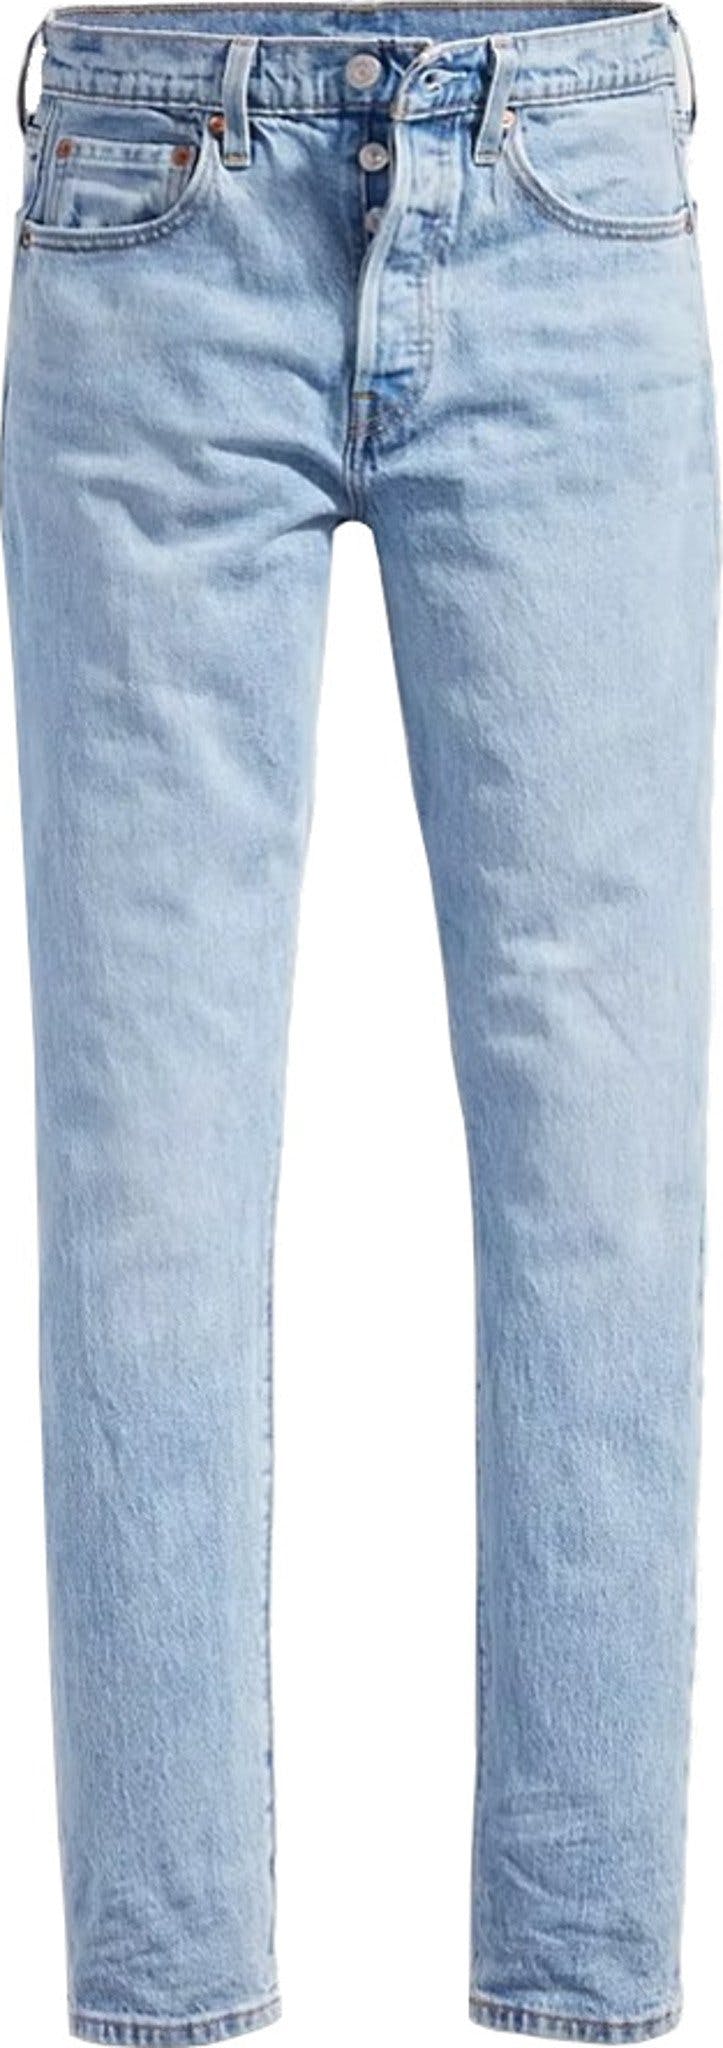 Numéro de l'image de la galerie de produits 1 pour le produit Jeans coupe étroite 501 - Femme